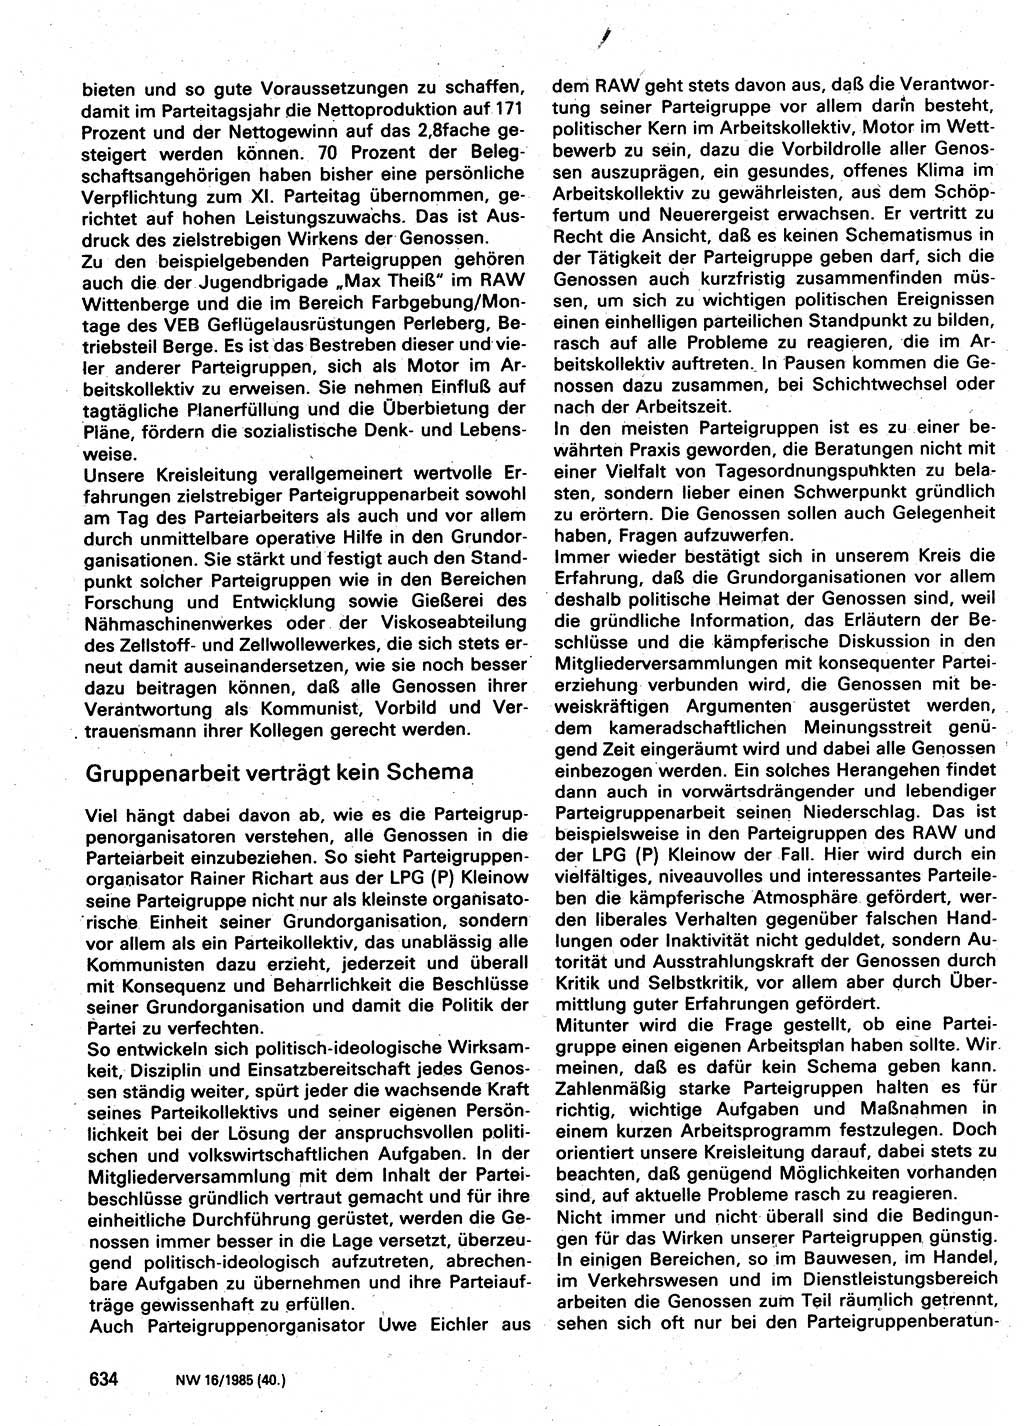 Neuer Weg (NW), Organ des Zentralkomitees (ZK) der SED (Sozialistische Einheitspartei Deutschlands) für Fragen des Parteilebens, 40. Jahrgang [Deutsche Demokratische Republik (DDR)] 1985, Seite 634 (NW ZK SED DDR 1985, S. 634)